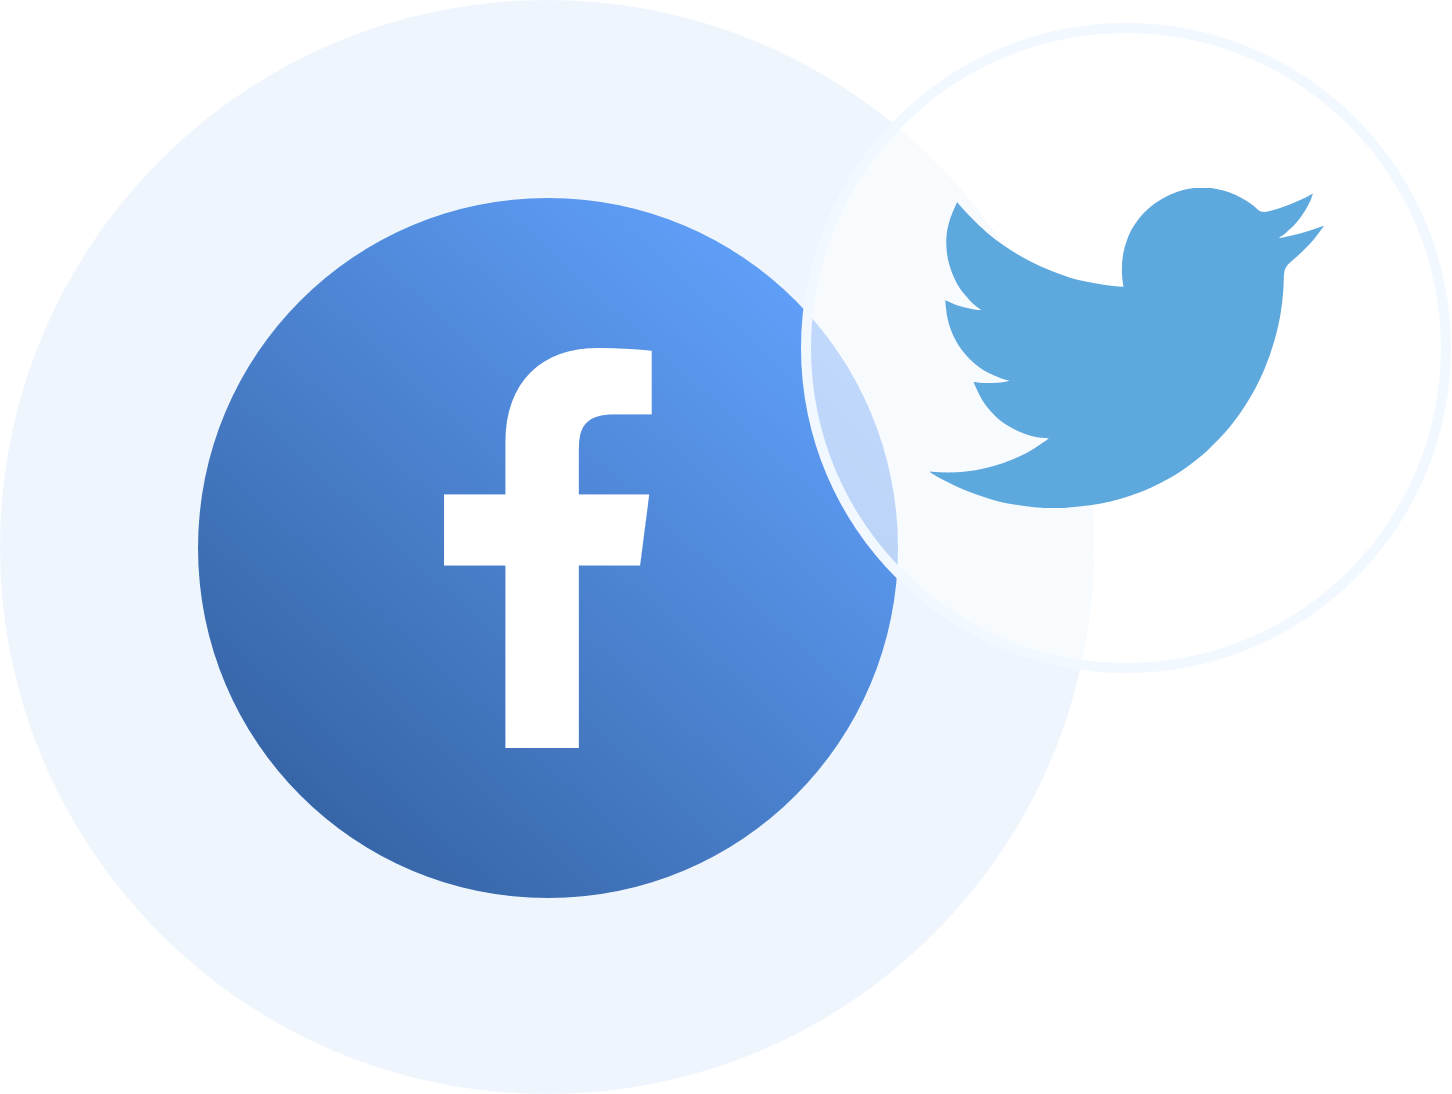  Social Media for Business